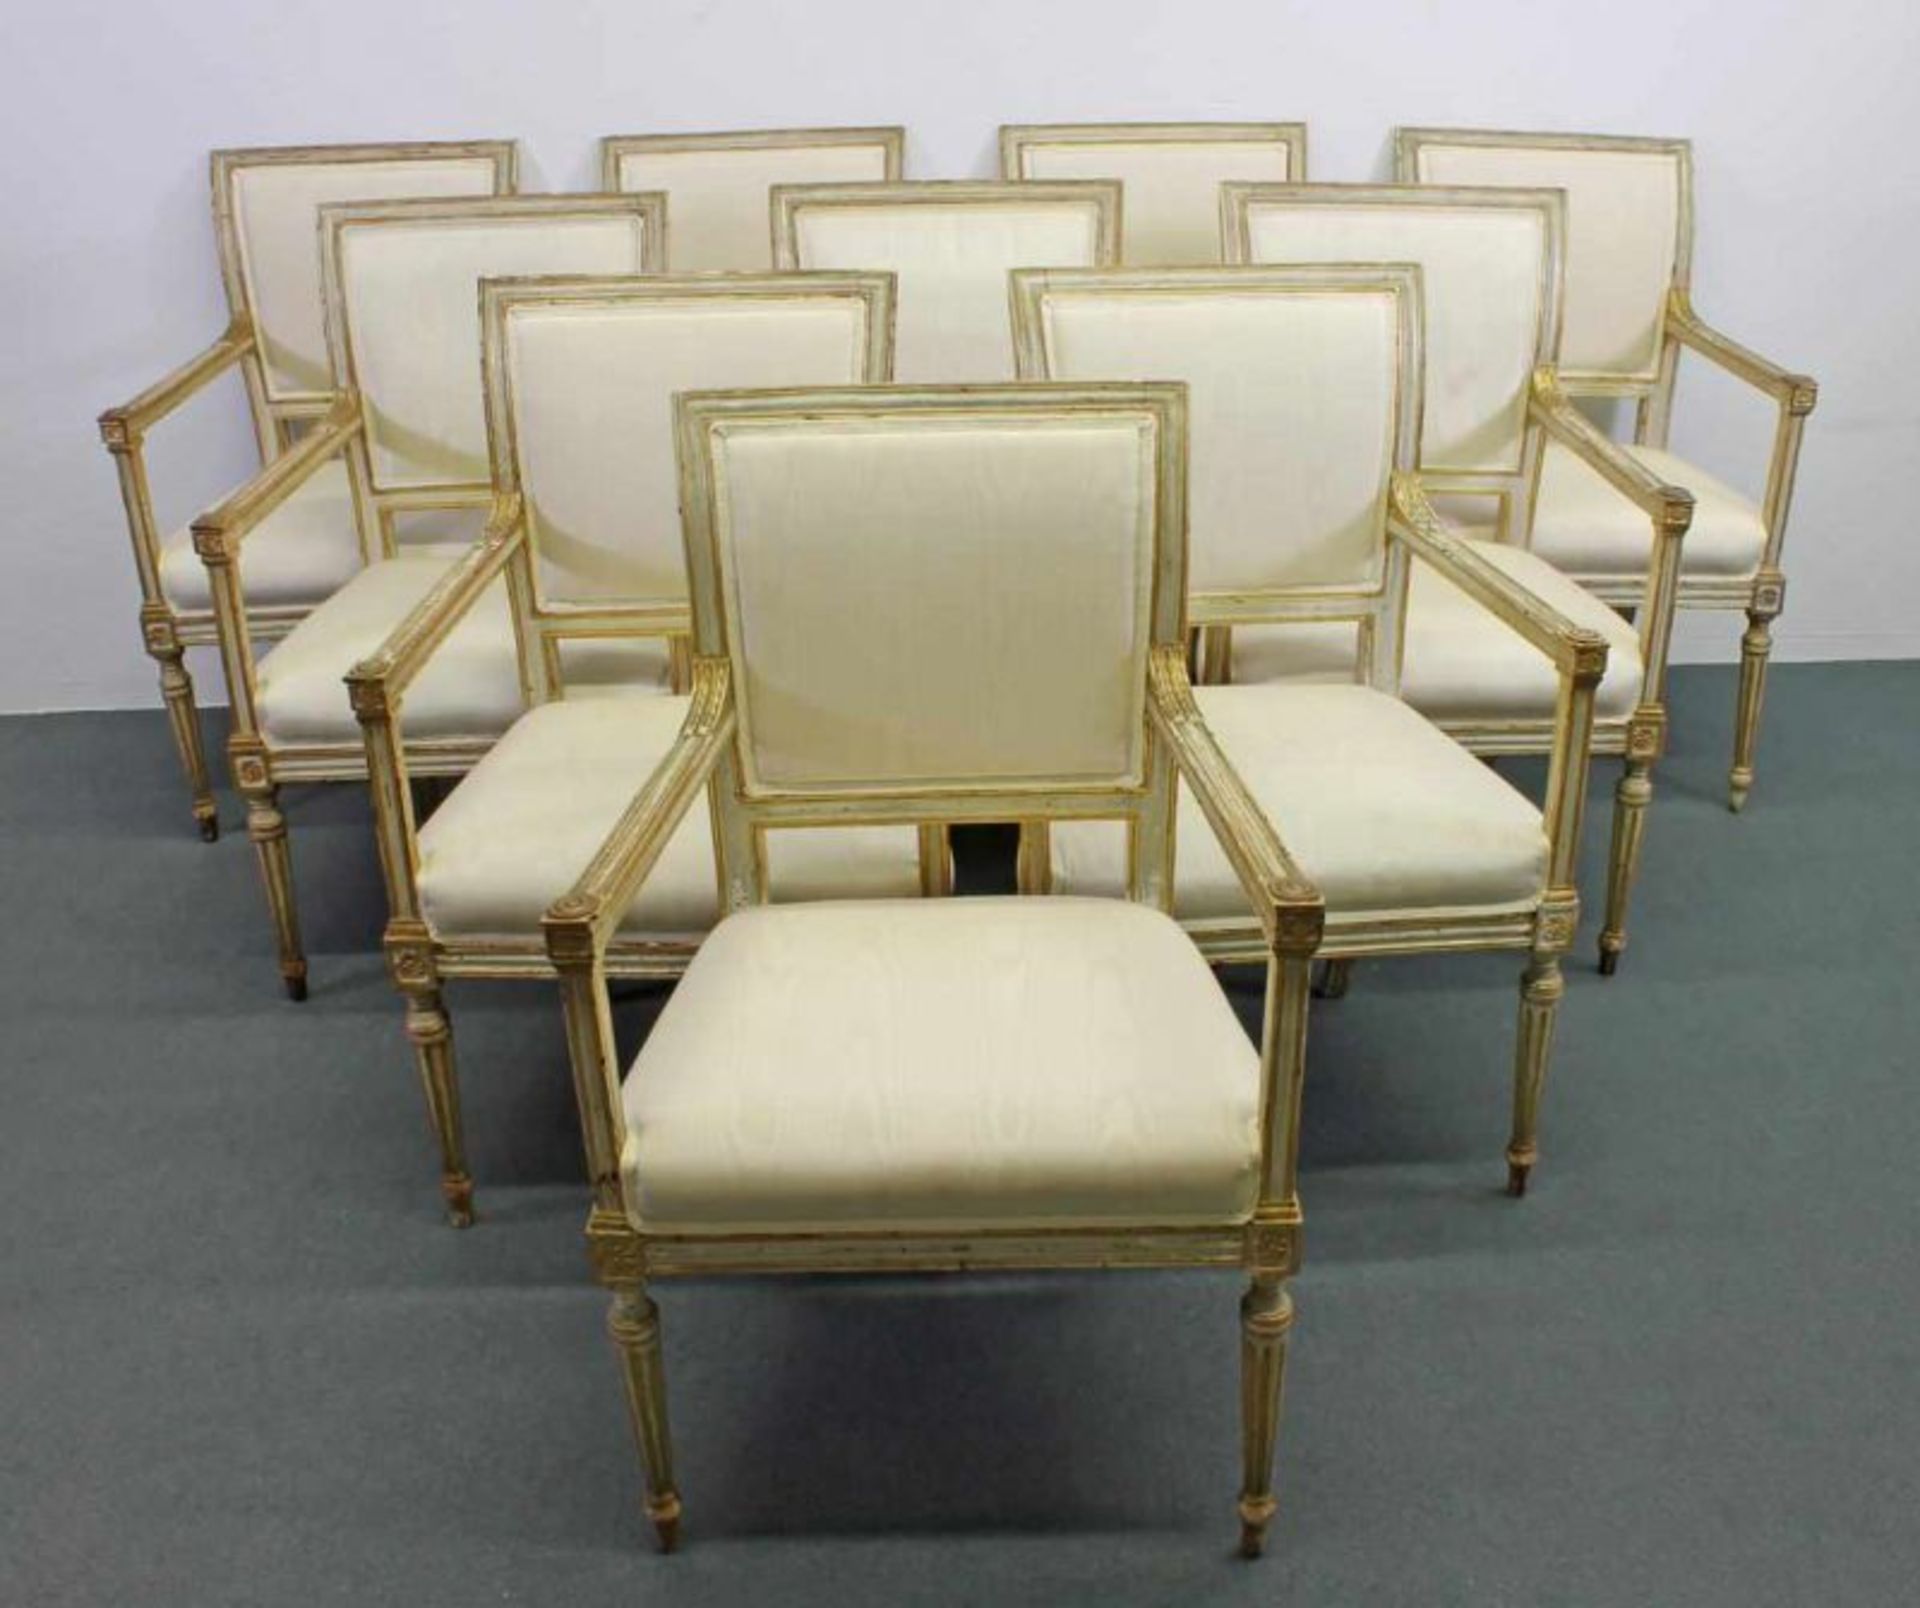 10 Armlehnstühle, Louis XVI, um 1780, creme/gold gefasst, Sitz- und Rückenpolster, erneuert,